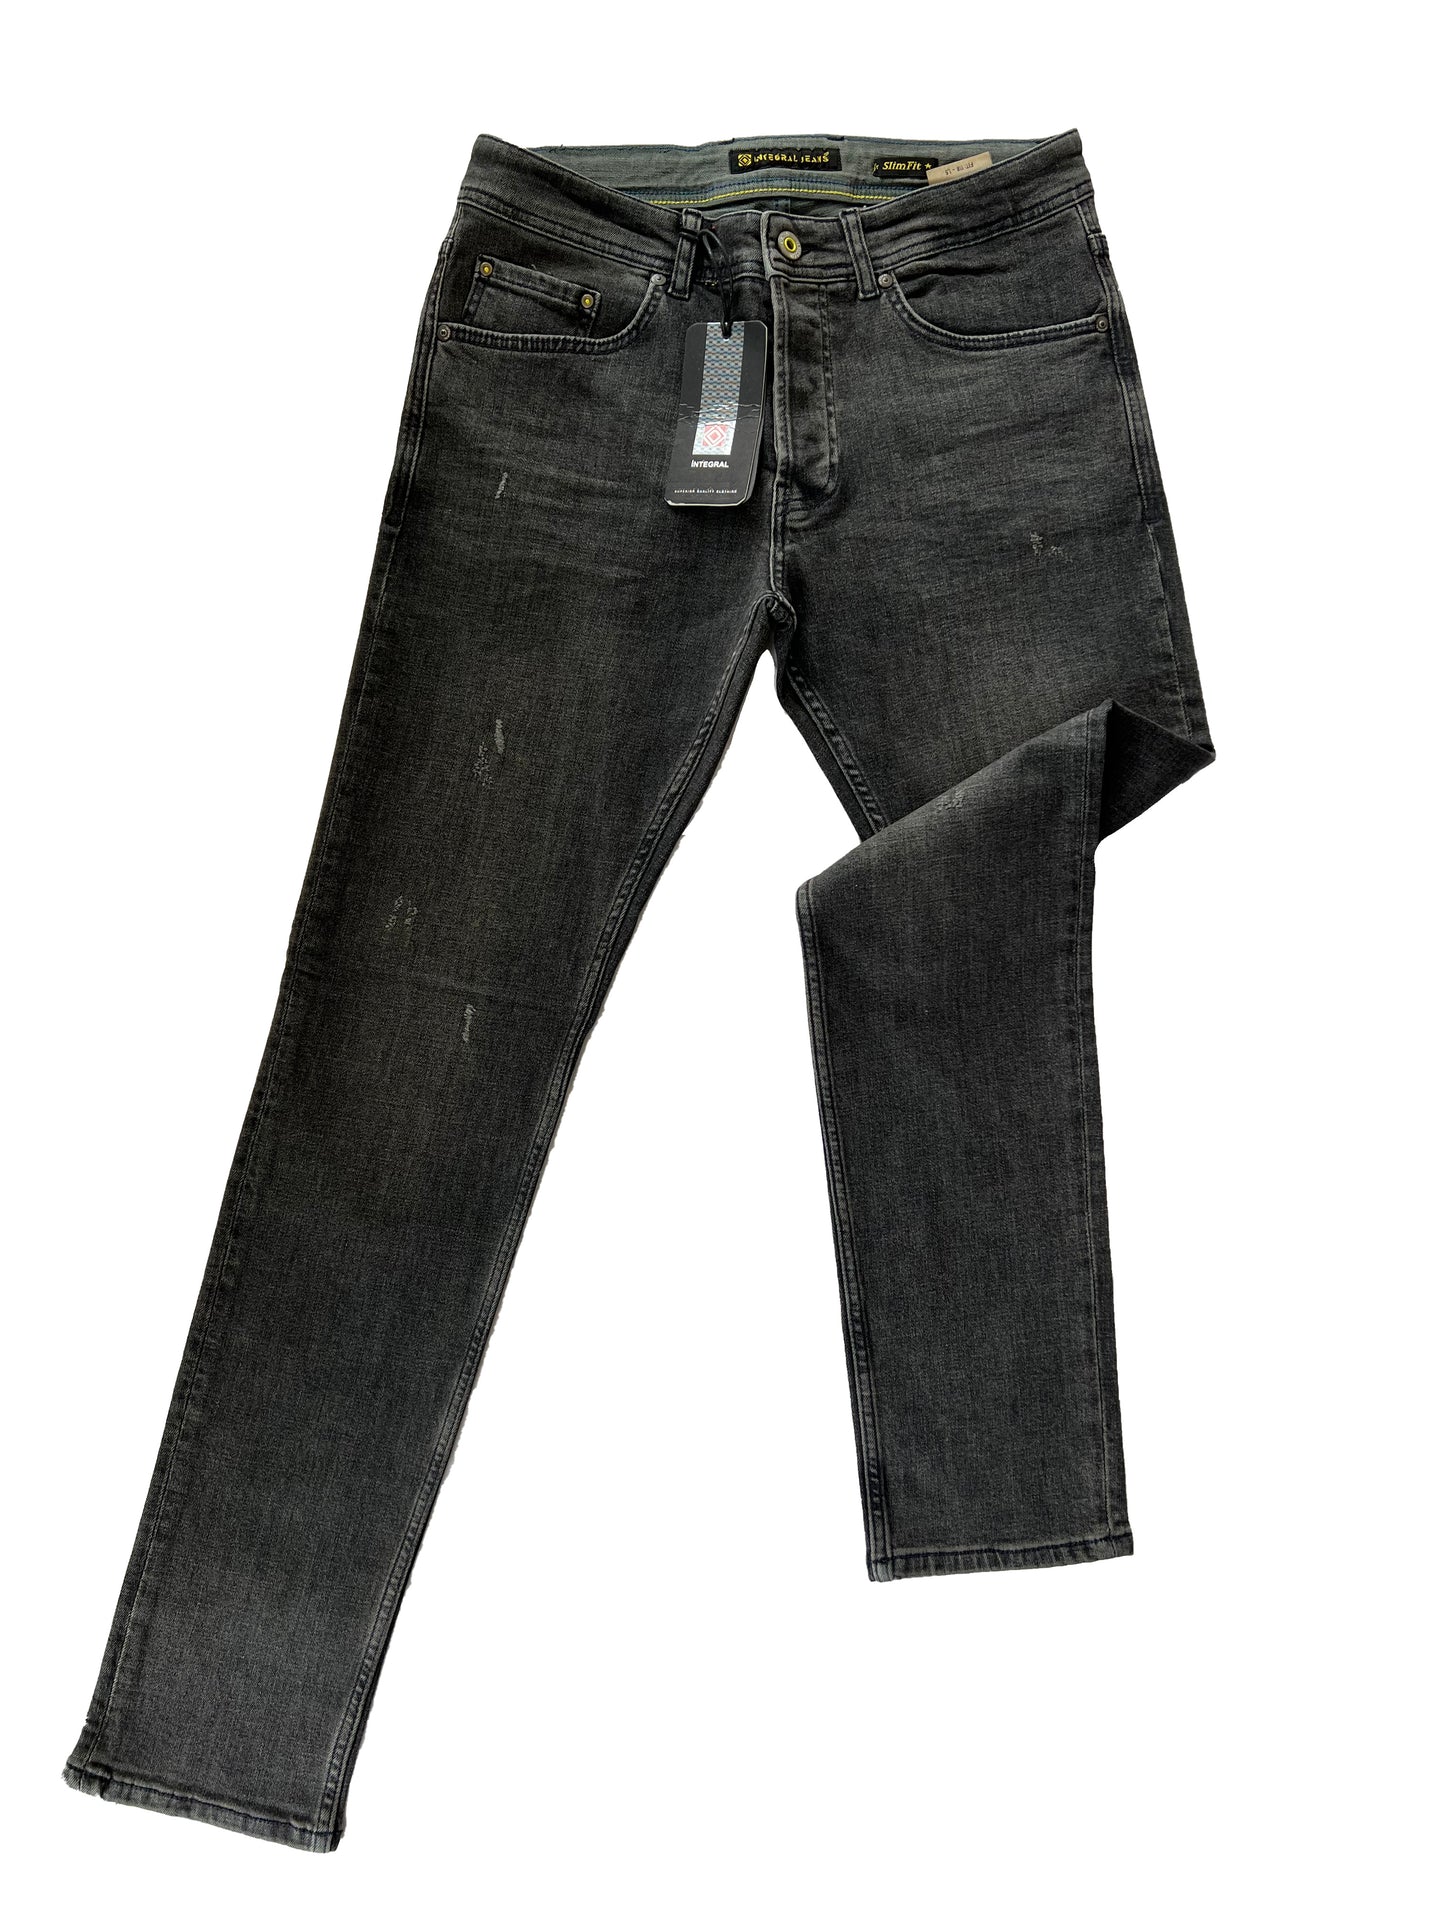 Jeans, pantalons confortables coupe ajustée pour hommes - Malton 